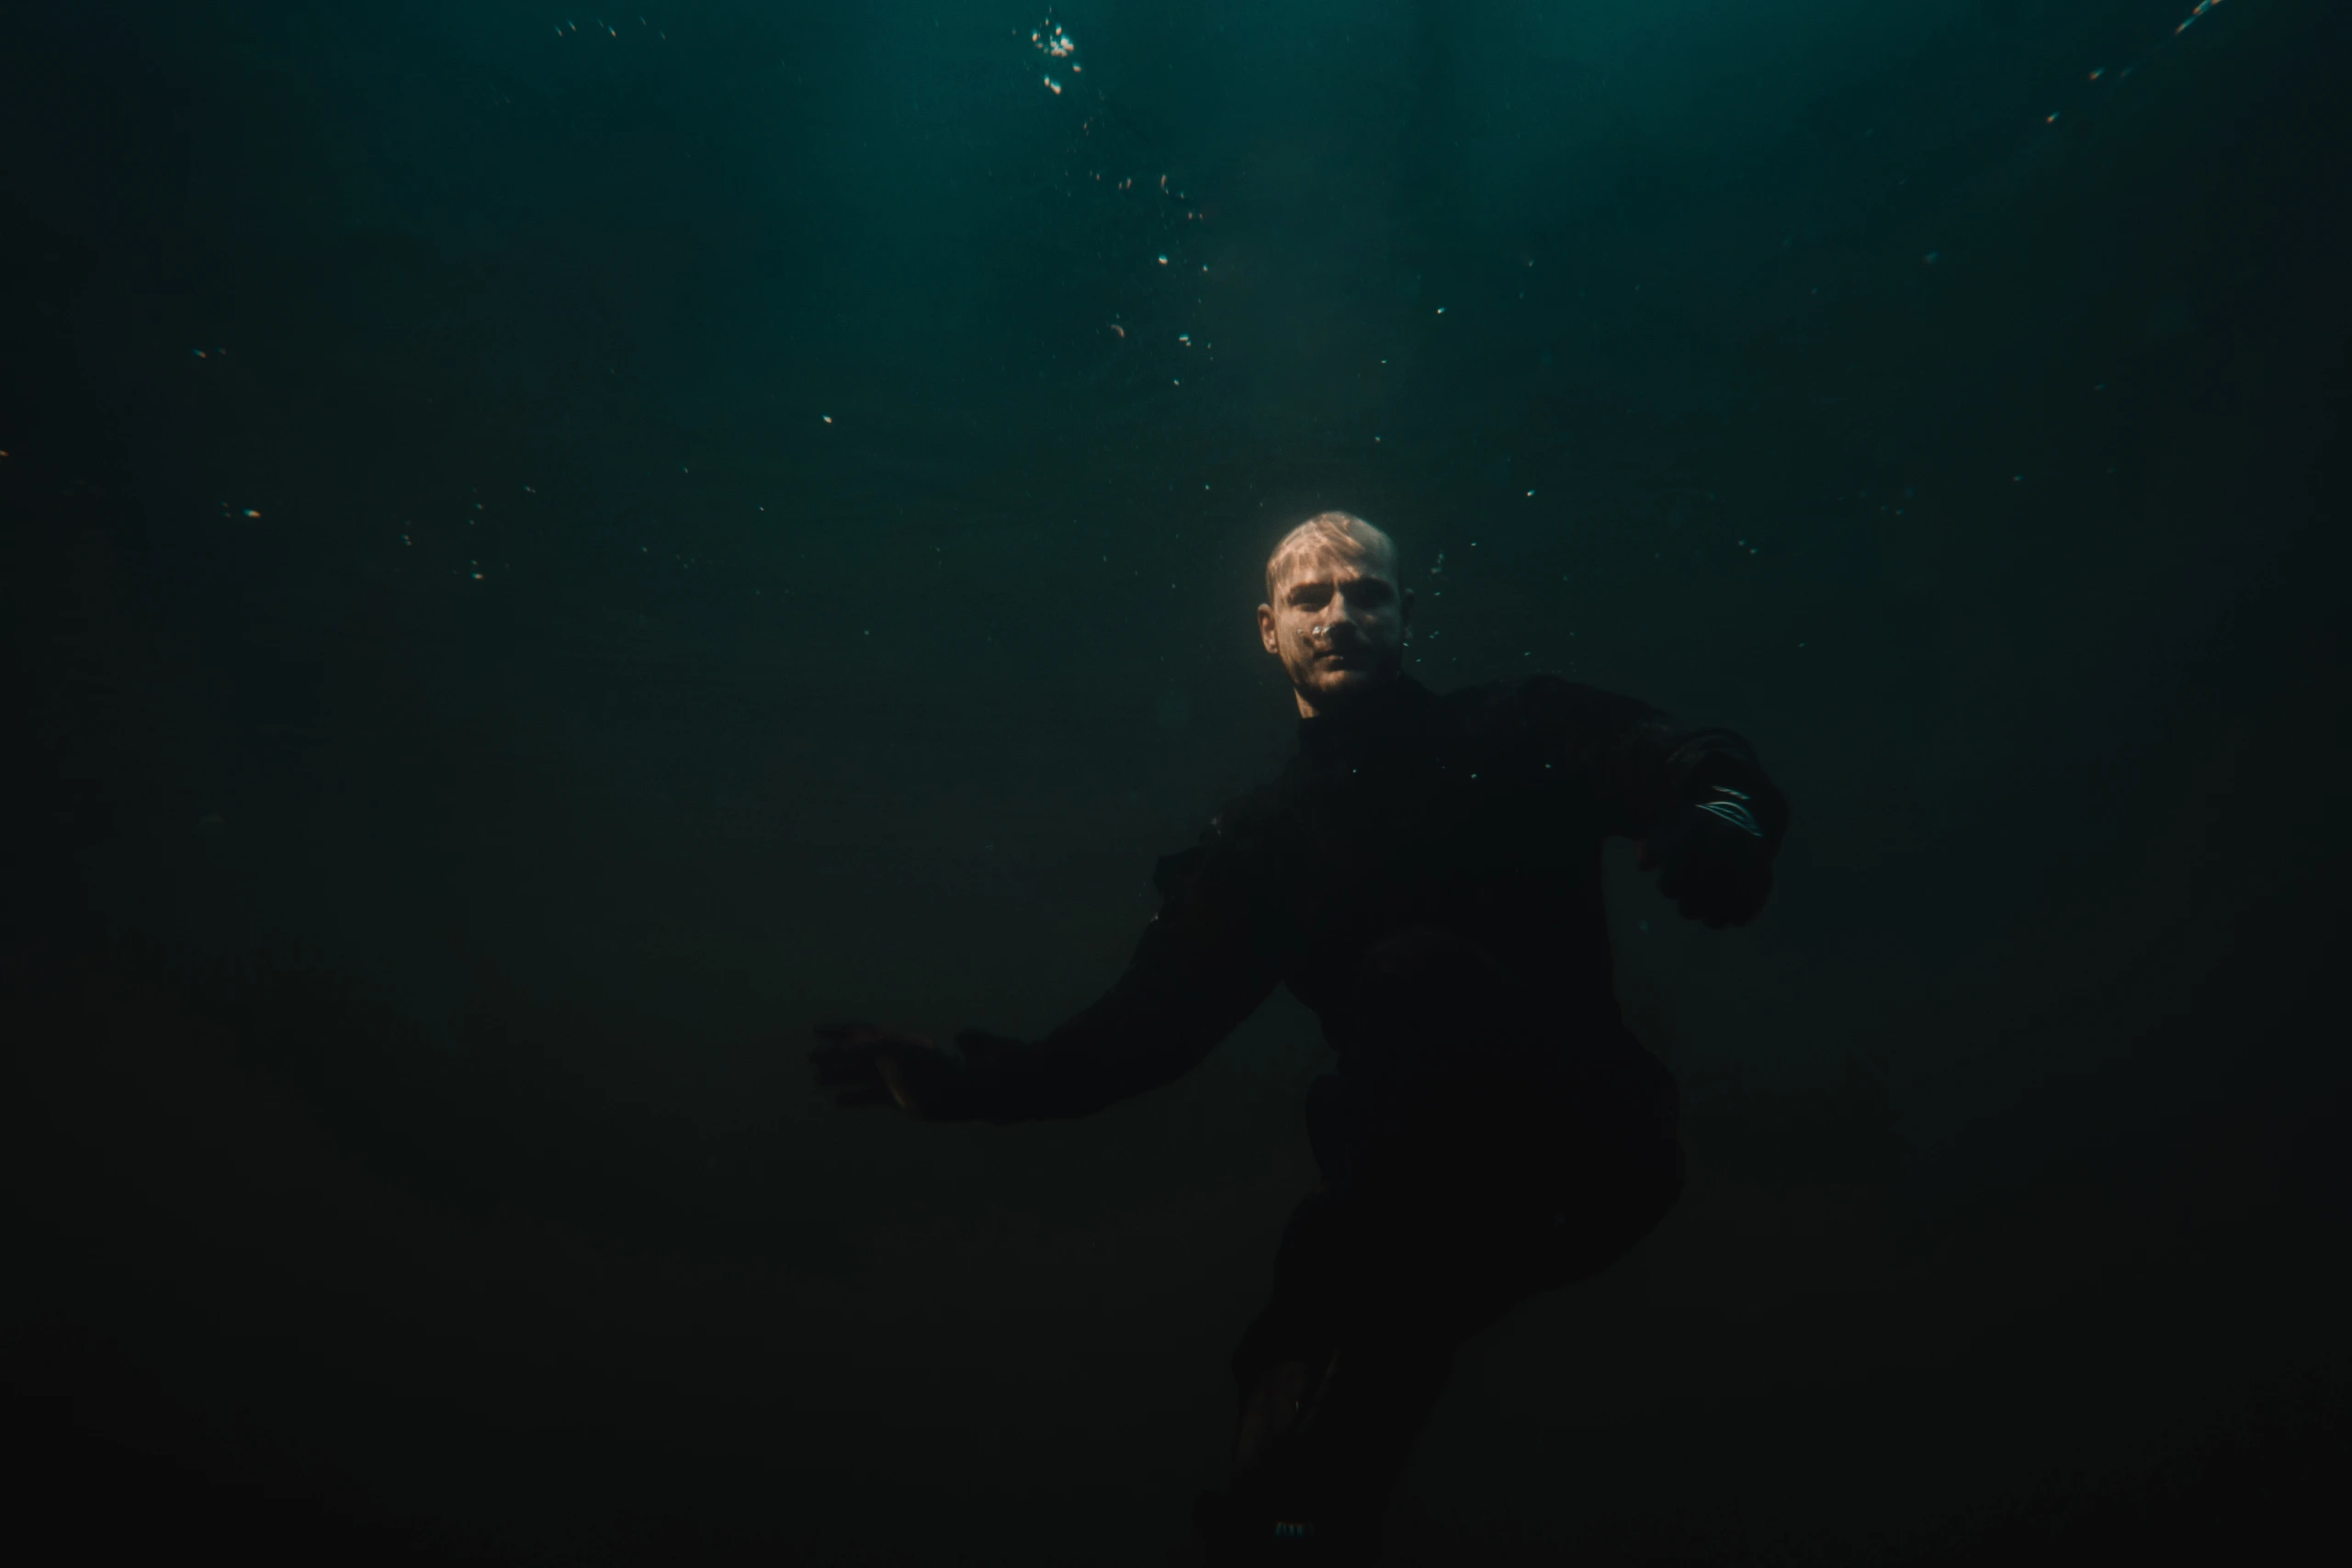 Sebastian underwater in a flight suit